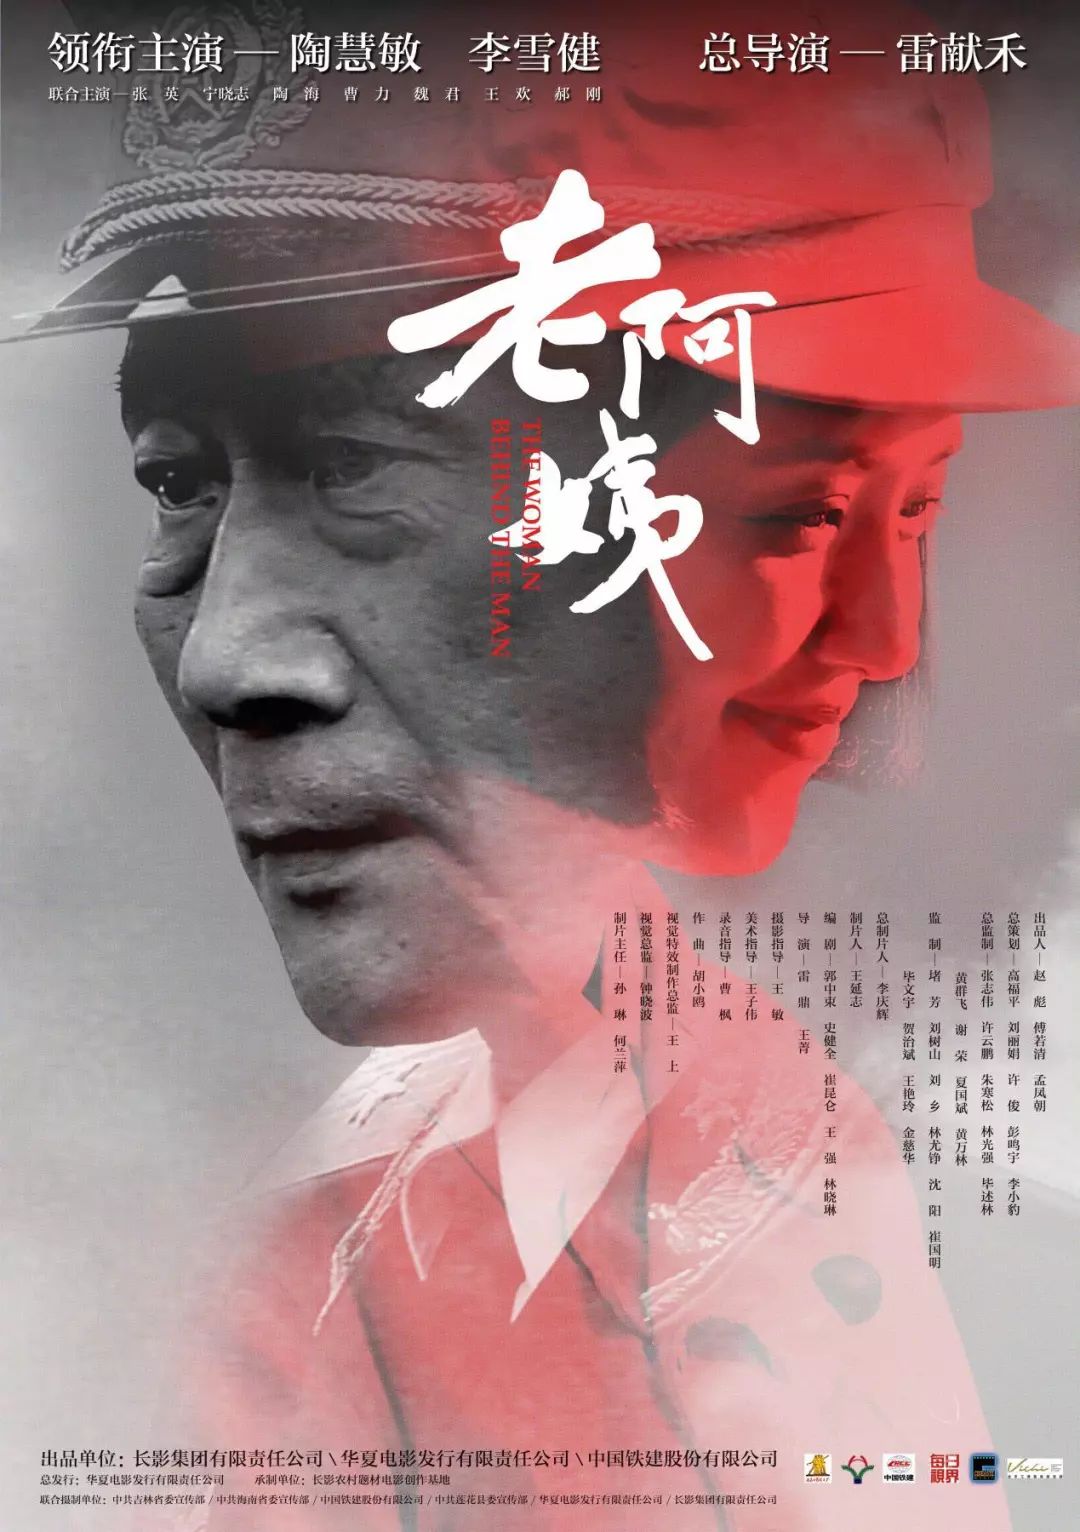 【J·鬼知道我經歷了什麼】第17屆中國電影華表獎獲獎名單 新聞 第2張